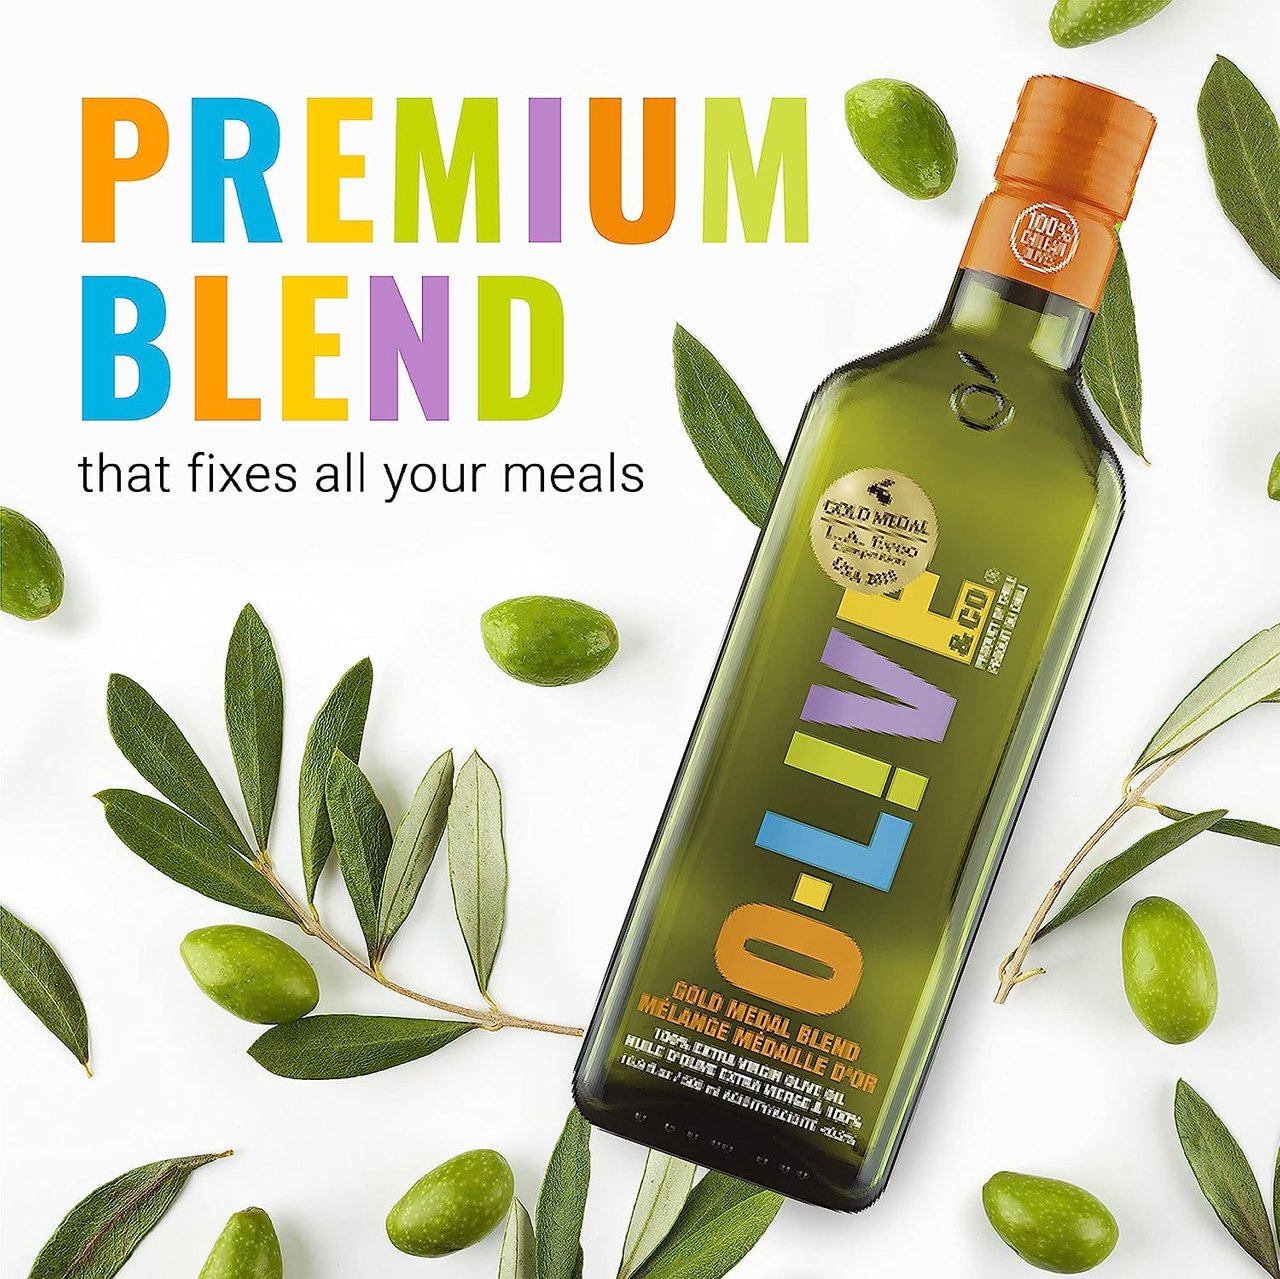 1 O-Live & Co. - Gold Medal Winner Extra Virgin Olive Oil, Cold Pressed, Premium Olive Oil Ideal for Cooking or for Salad Dressing, Versatile Olive Oil Extra Virgin - 17fl oz (500ml)